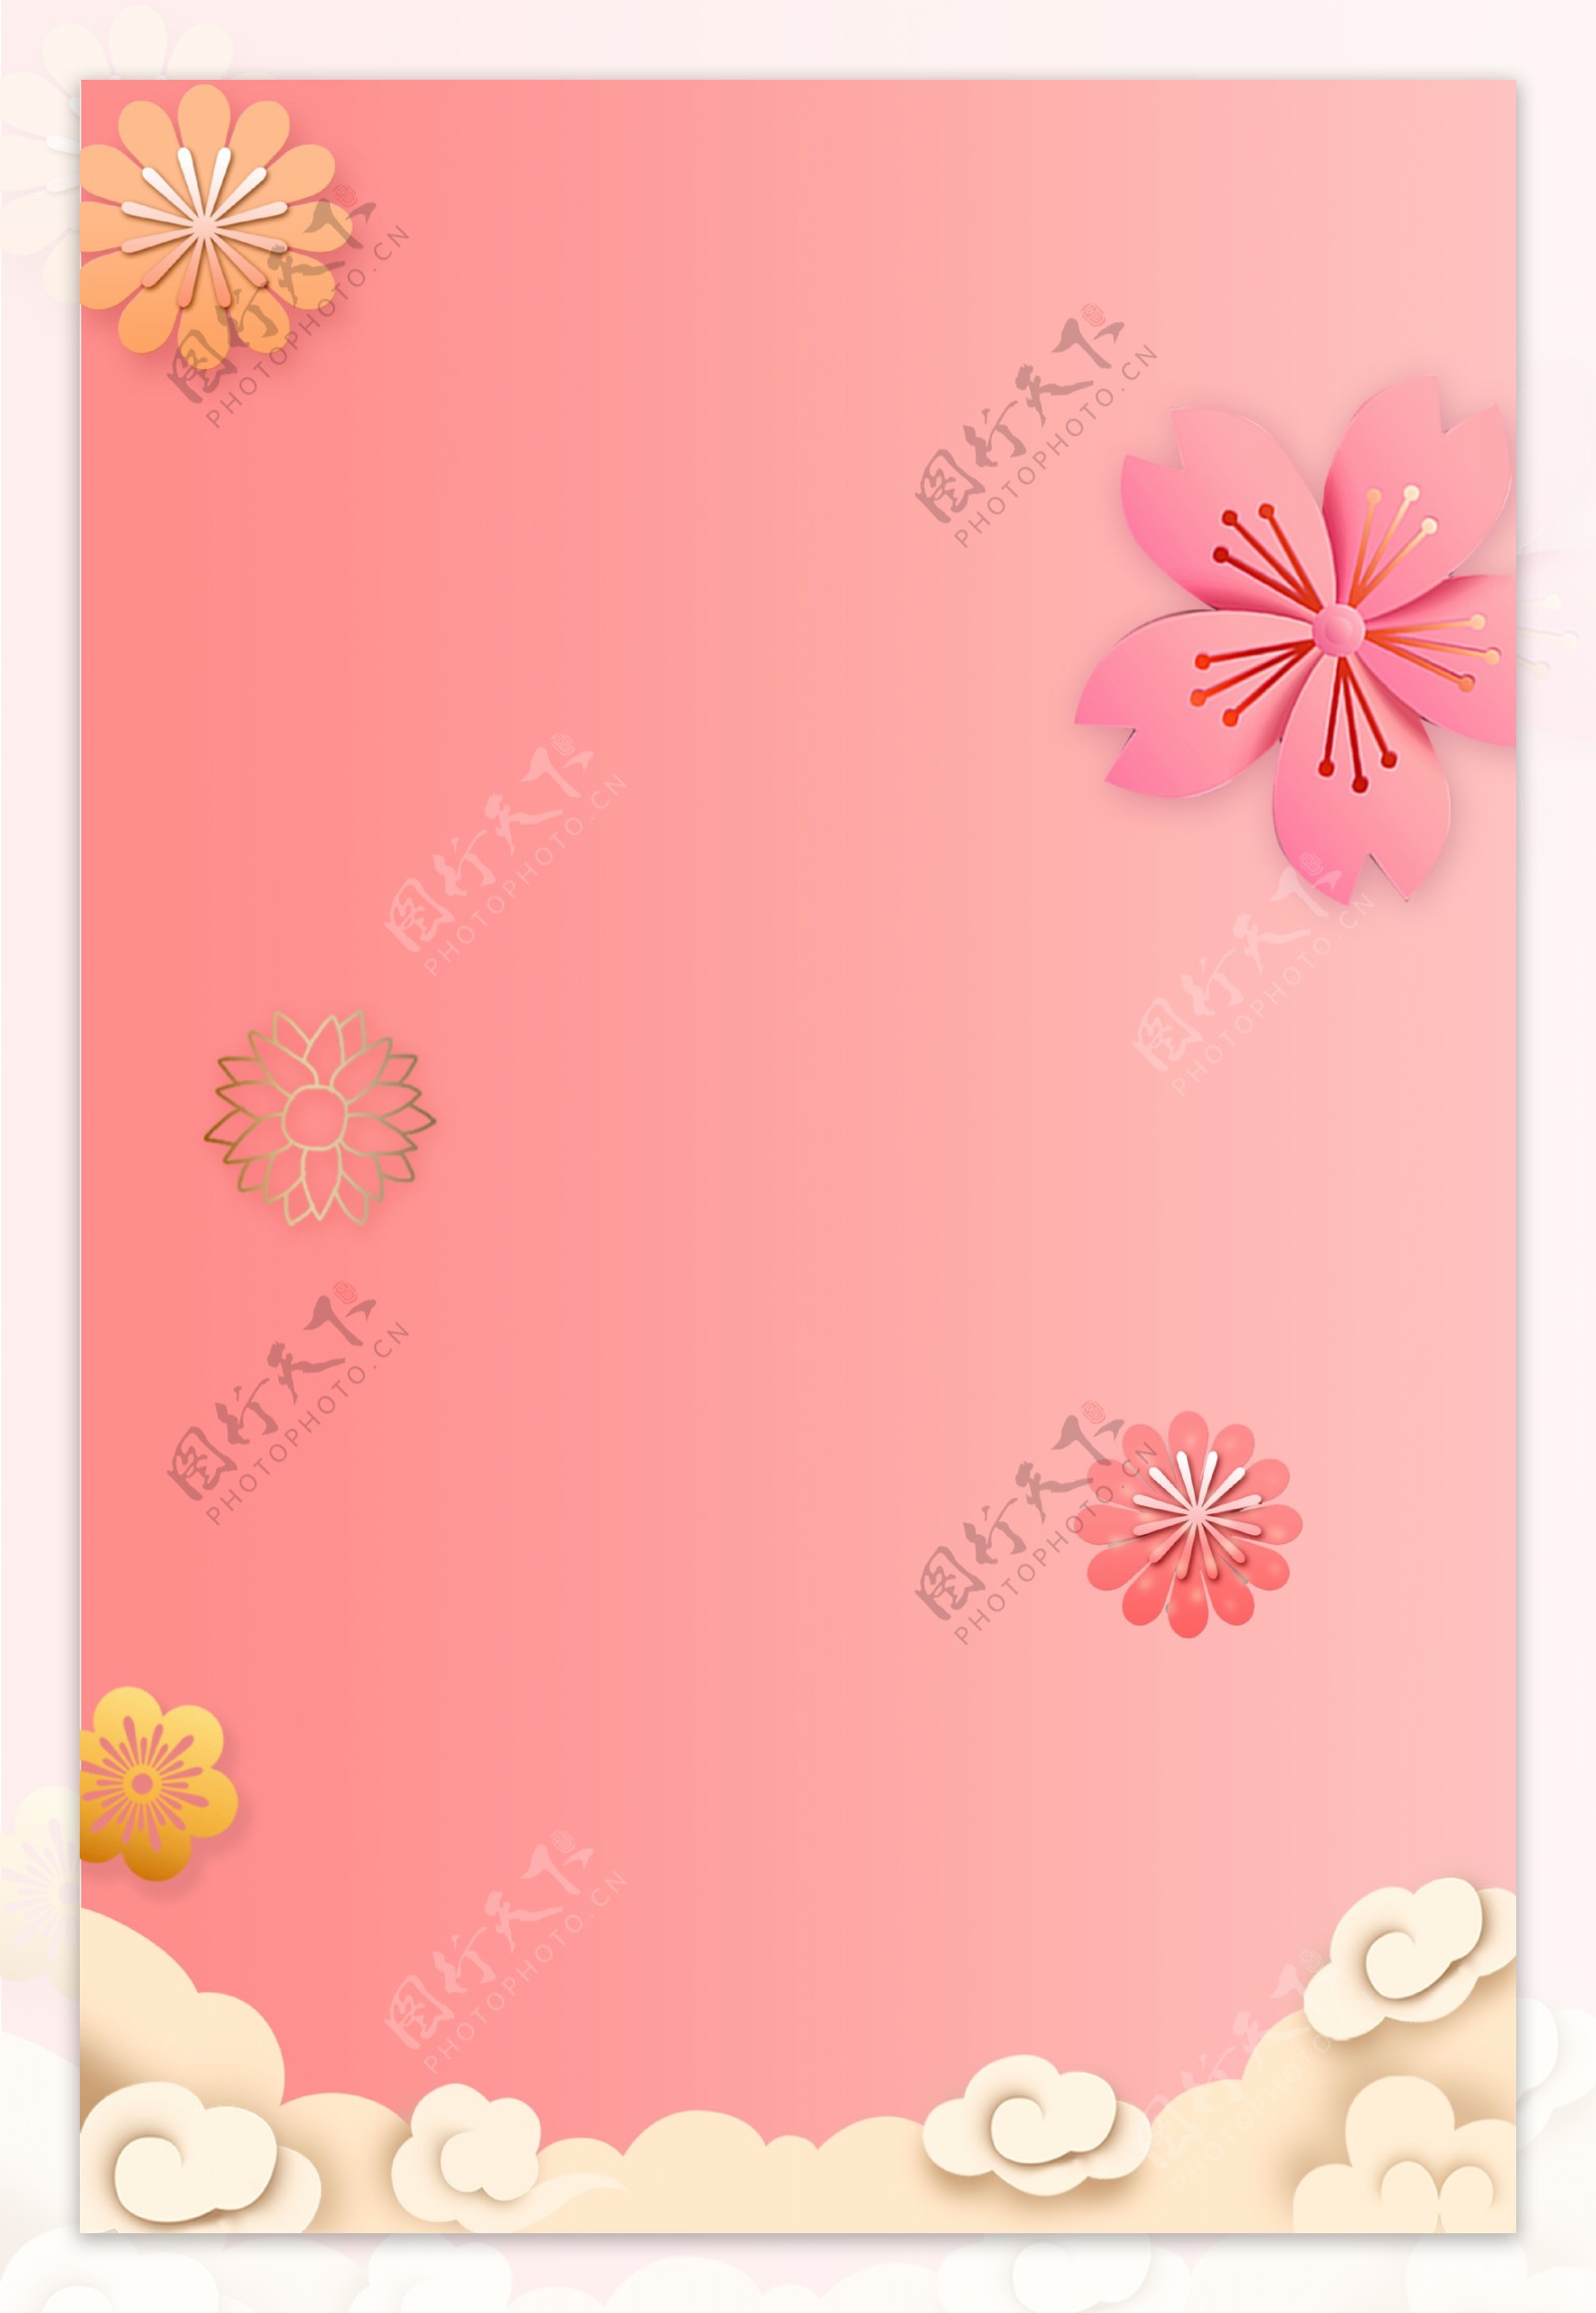 新式中国风花朵花卉背景模板